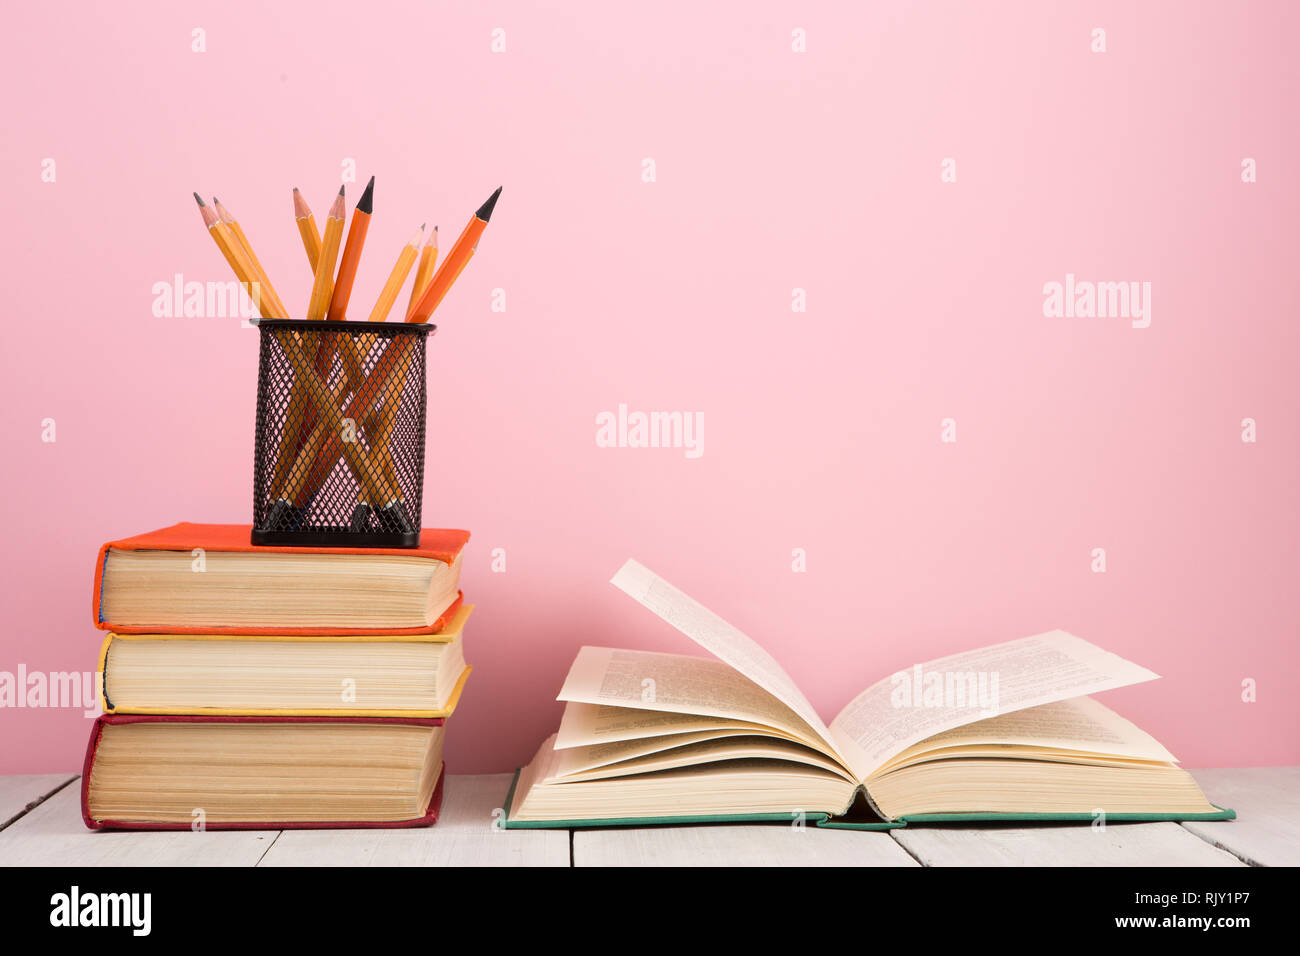 Sách mở trên bàn gỗ với nền hồng nhẹ sẽ giúp bạn cảm thấy thư thái và thăng hoa khi học tập. Hình ảnh đơn giản và đẹp mắt này sẽ giúp bạn tránh xa áp lực và đồng thời cung cấp niềm đam mê cho sự học hỏi.